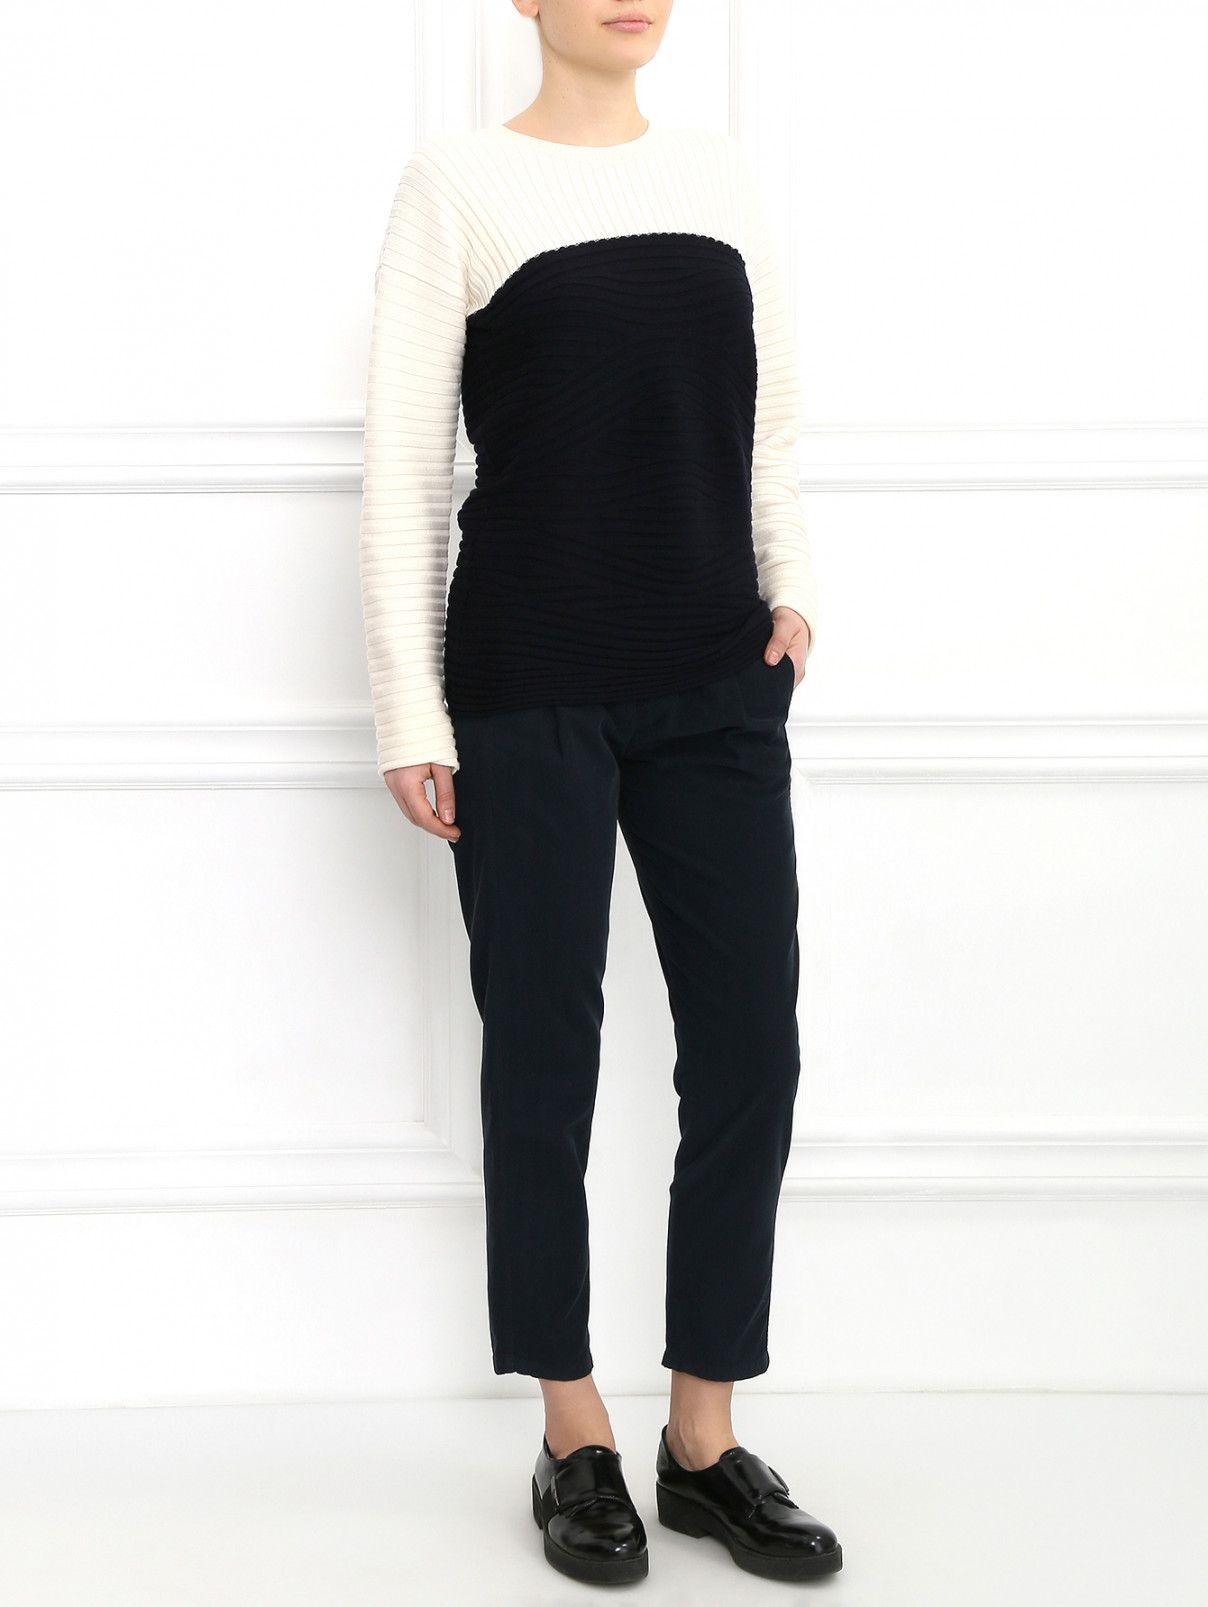 Джемпер из шерсти с контрастной вставкой Aimo Richly  –  Модель Общий вид  – Цвет:  Черный